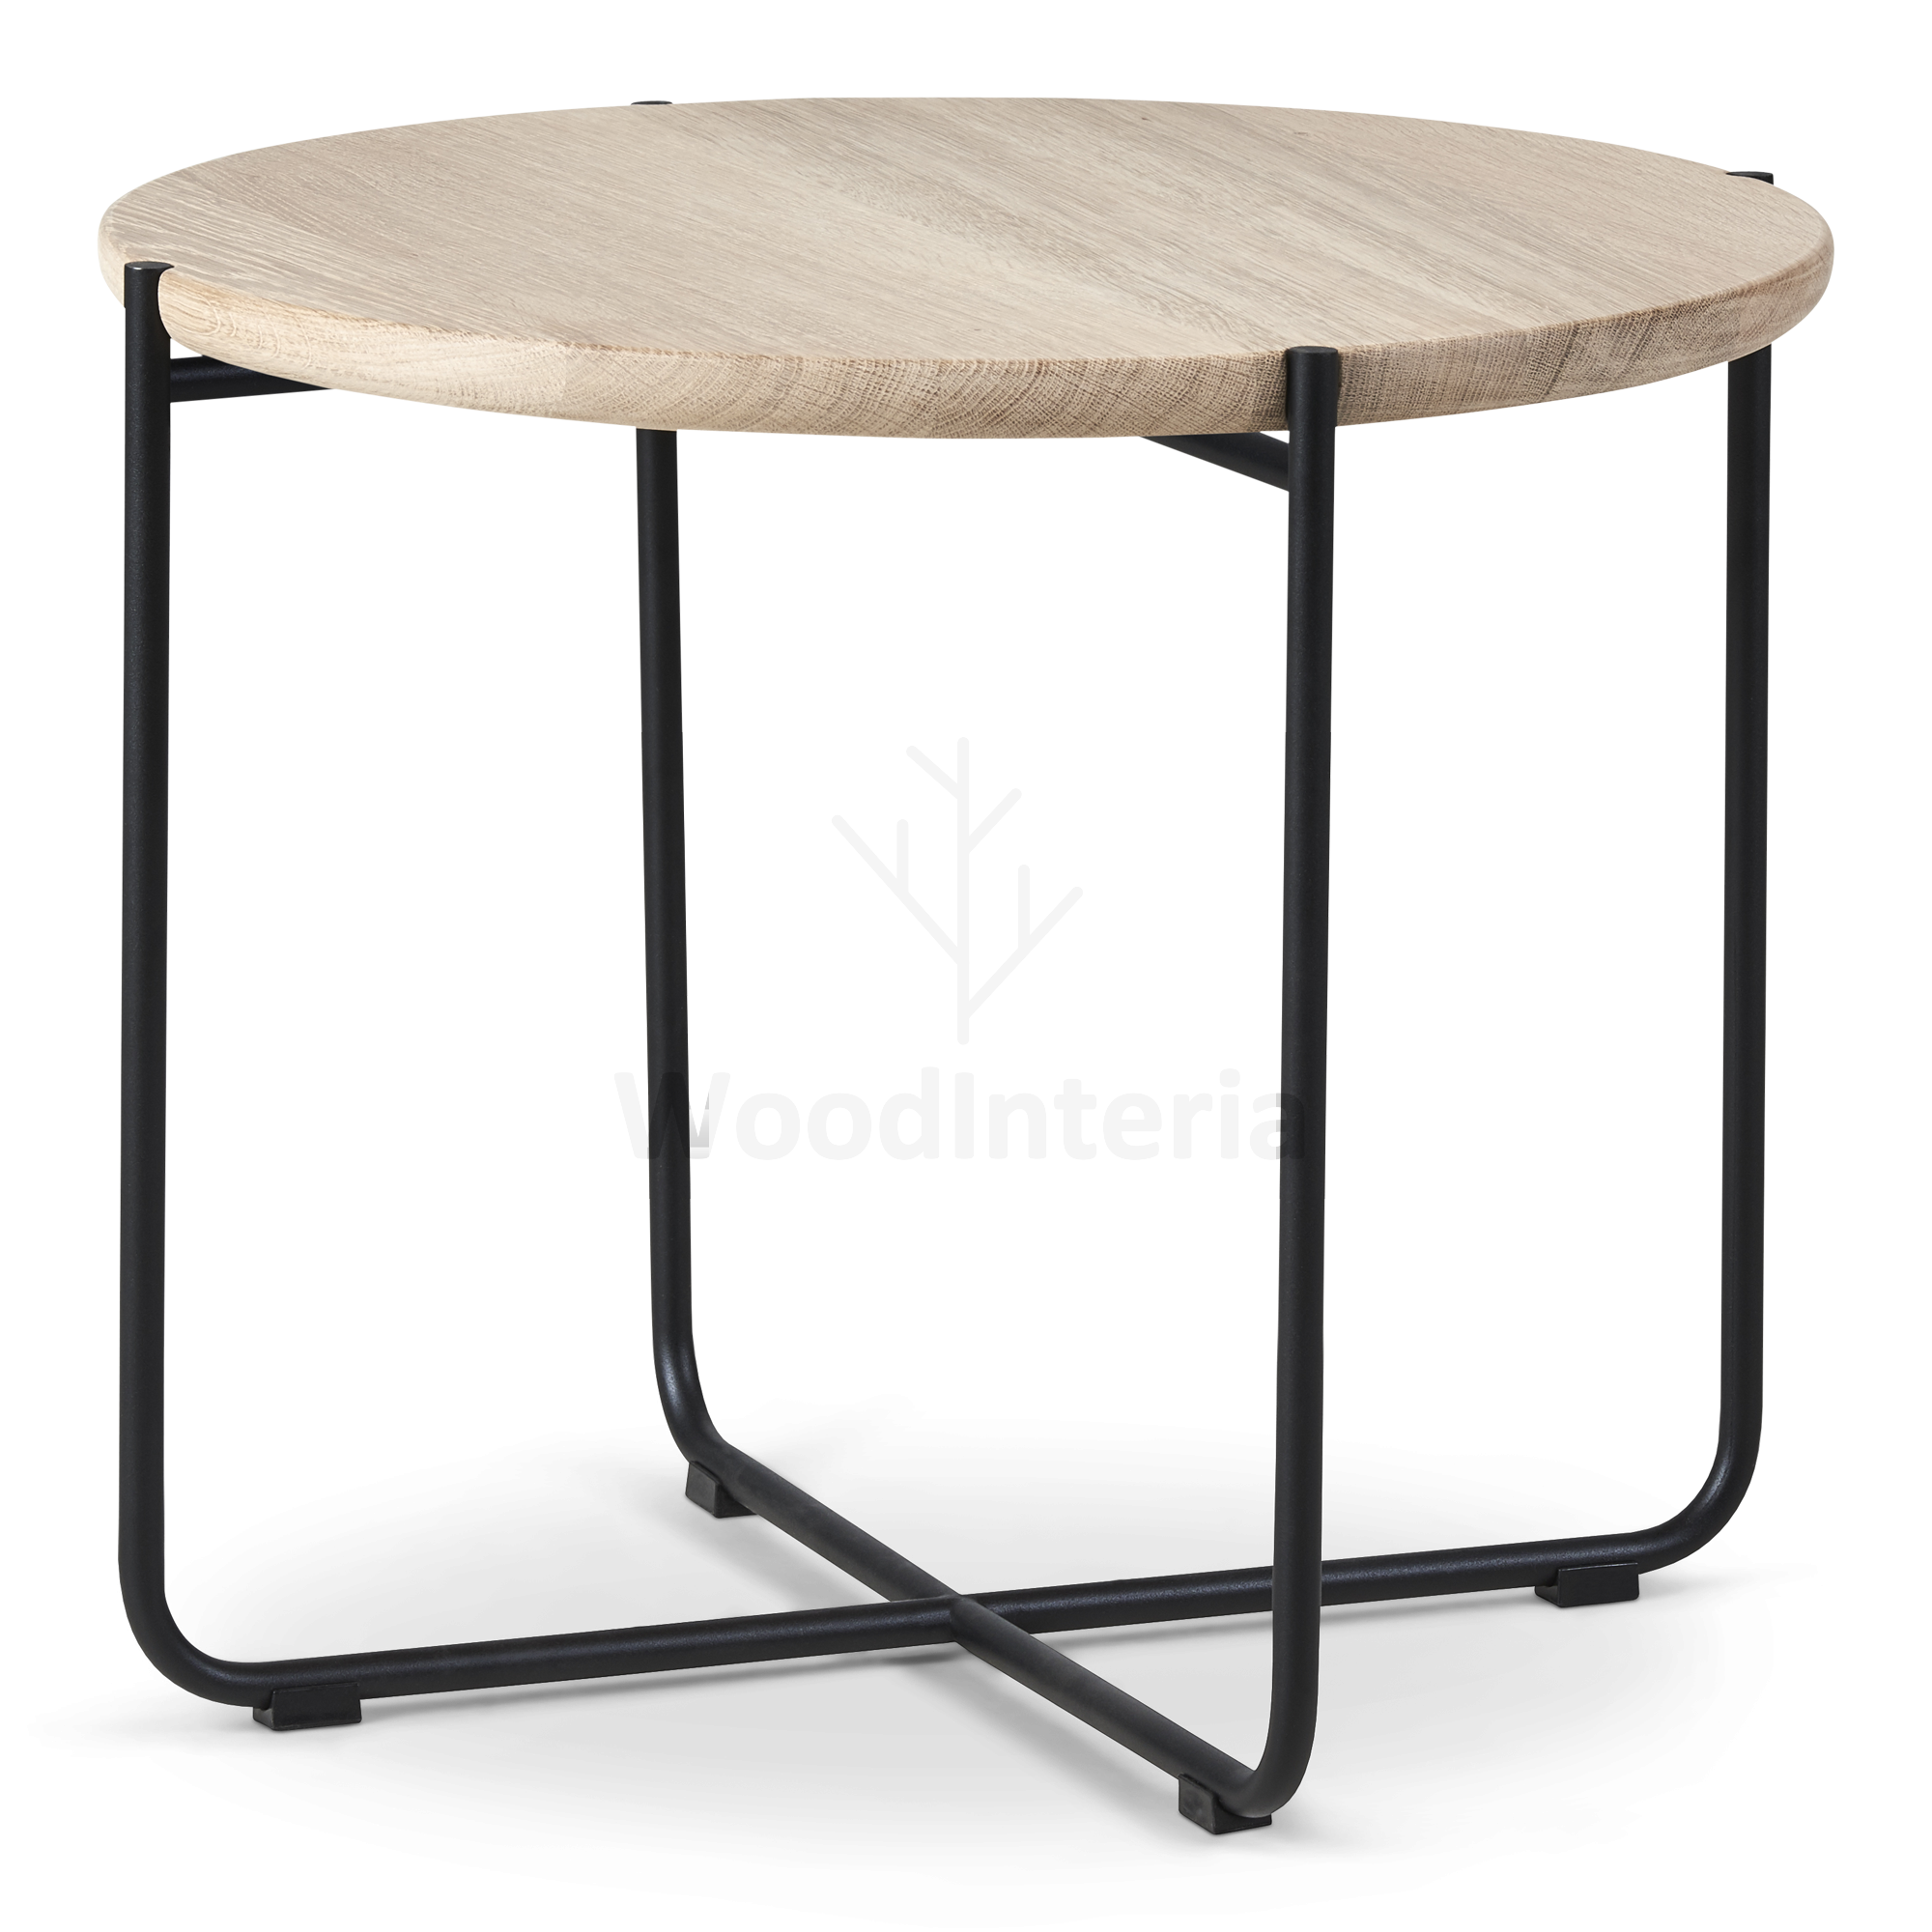 фото кофейный стол chamfer rod round в интерьере лофт эко | WoodInteria